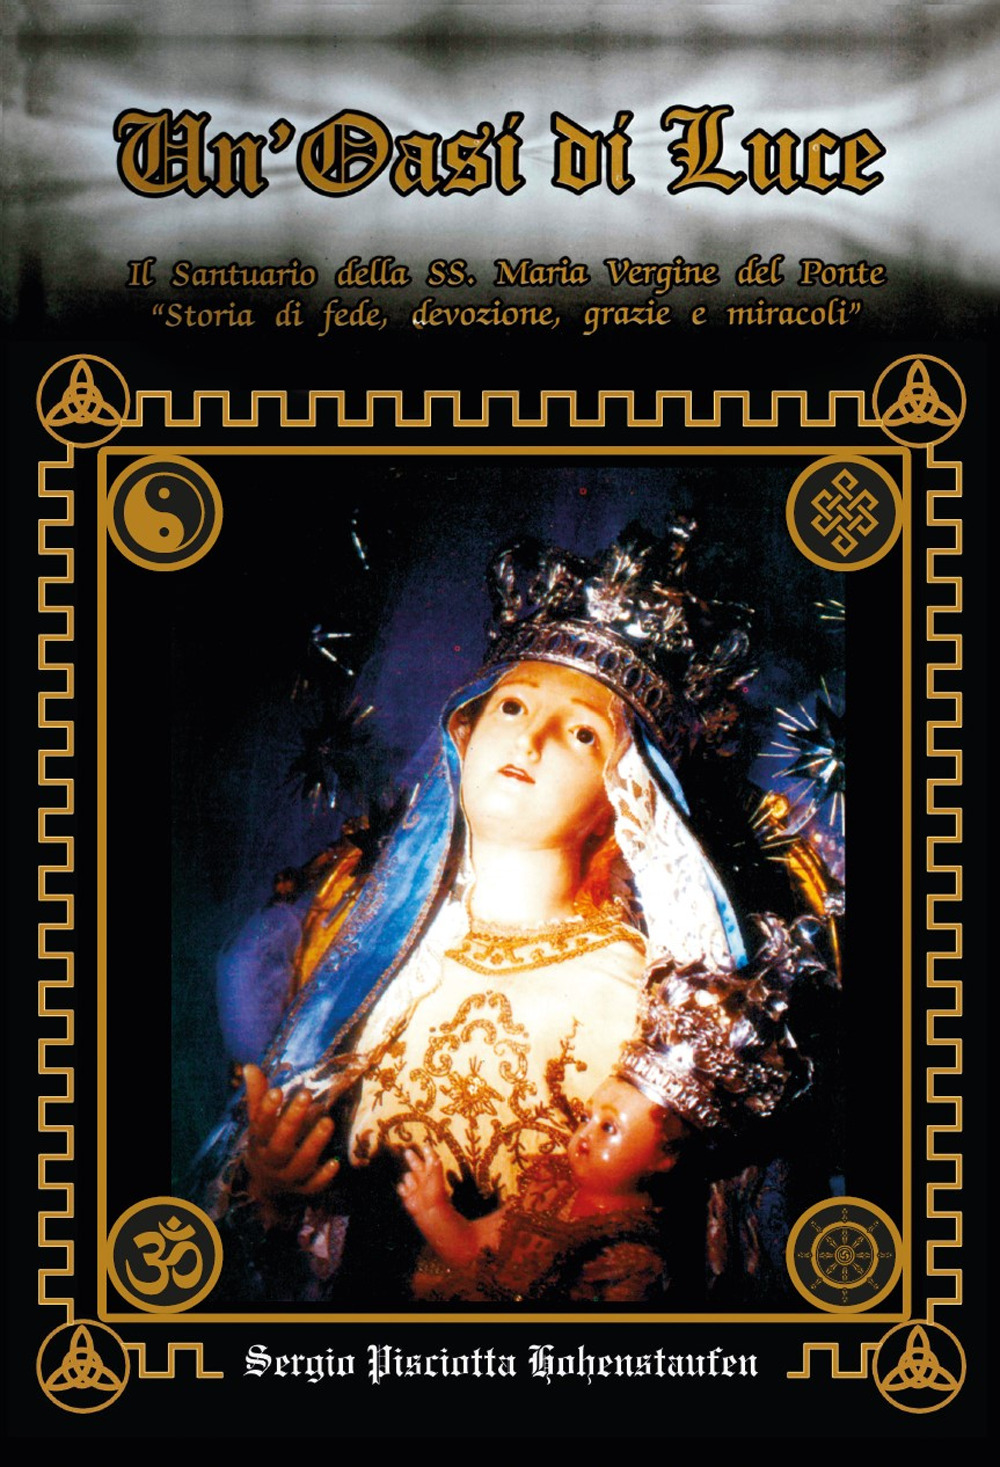 Un'oasi di luce. Il santuario della SS. Maria Vergine del Ponte. «Storia di fede, devozione, grazie e miracoli»